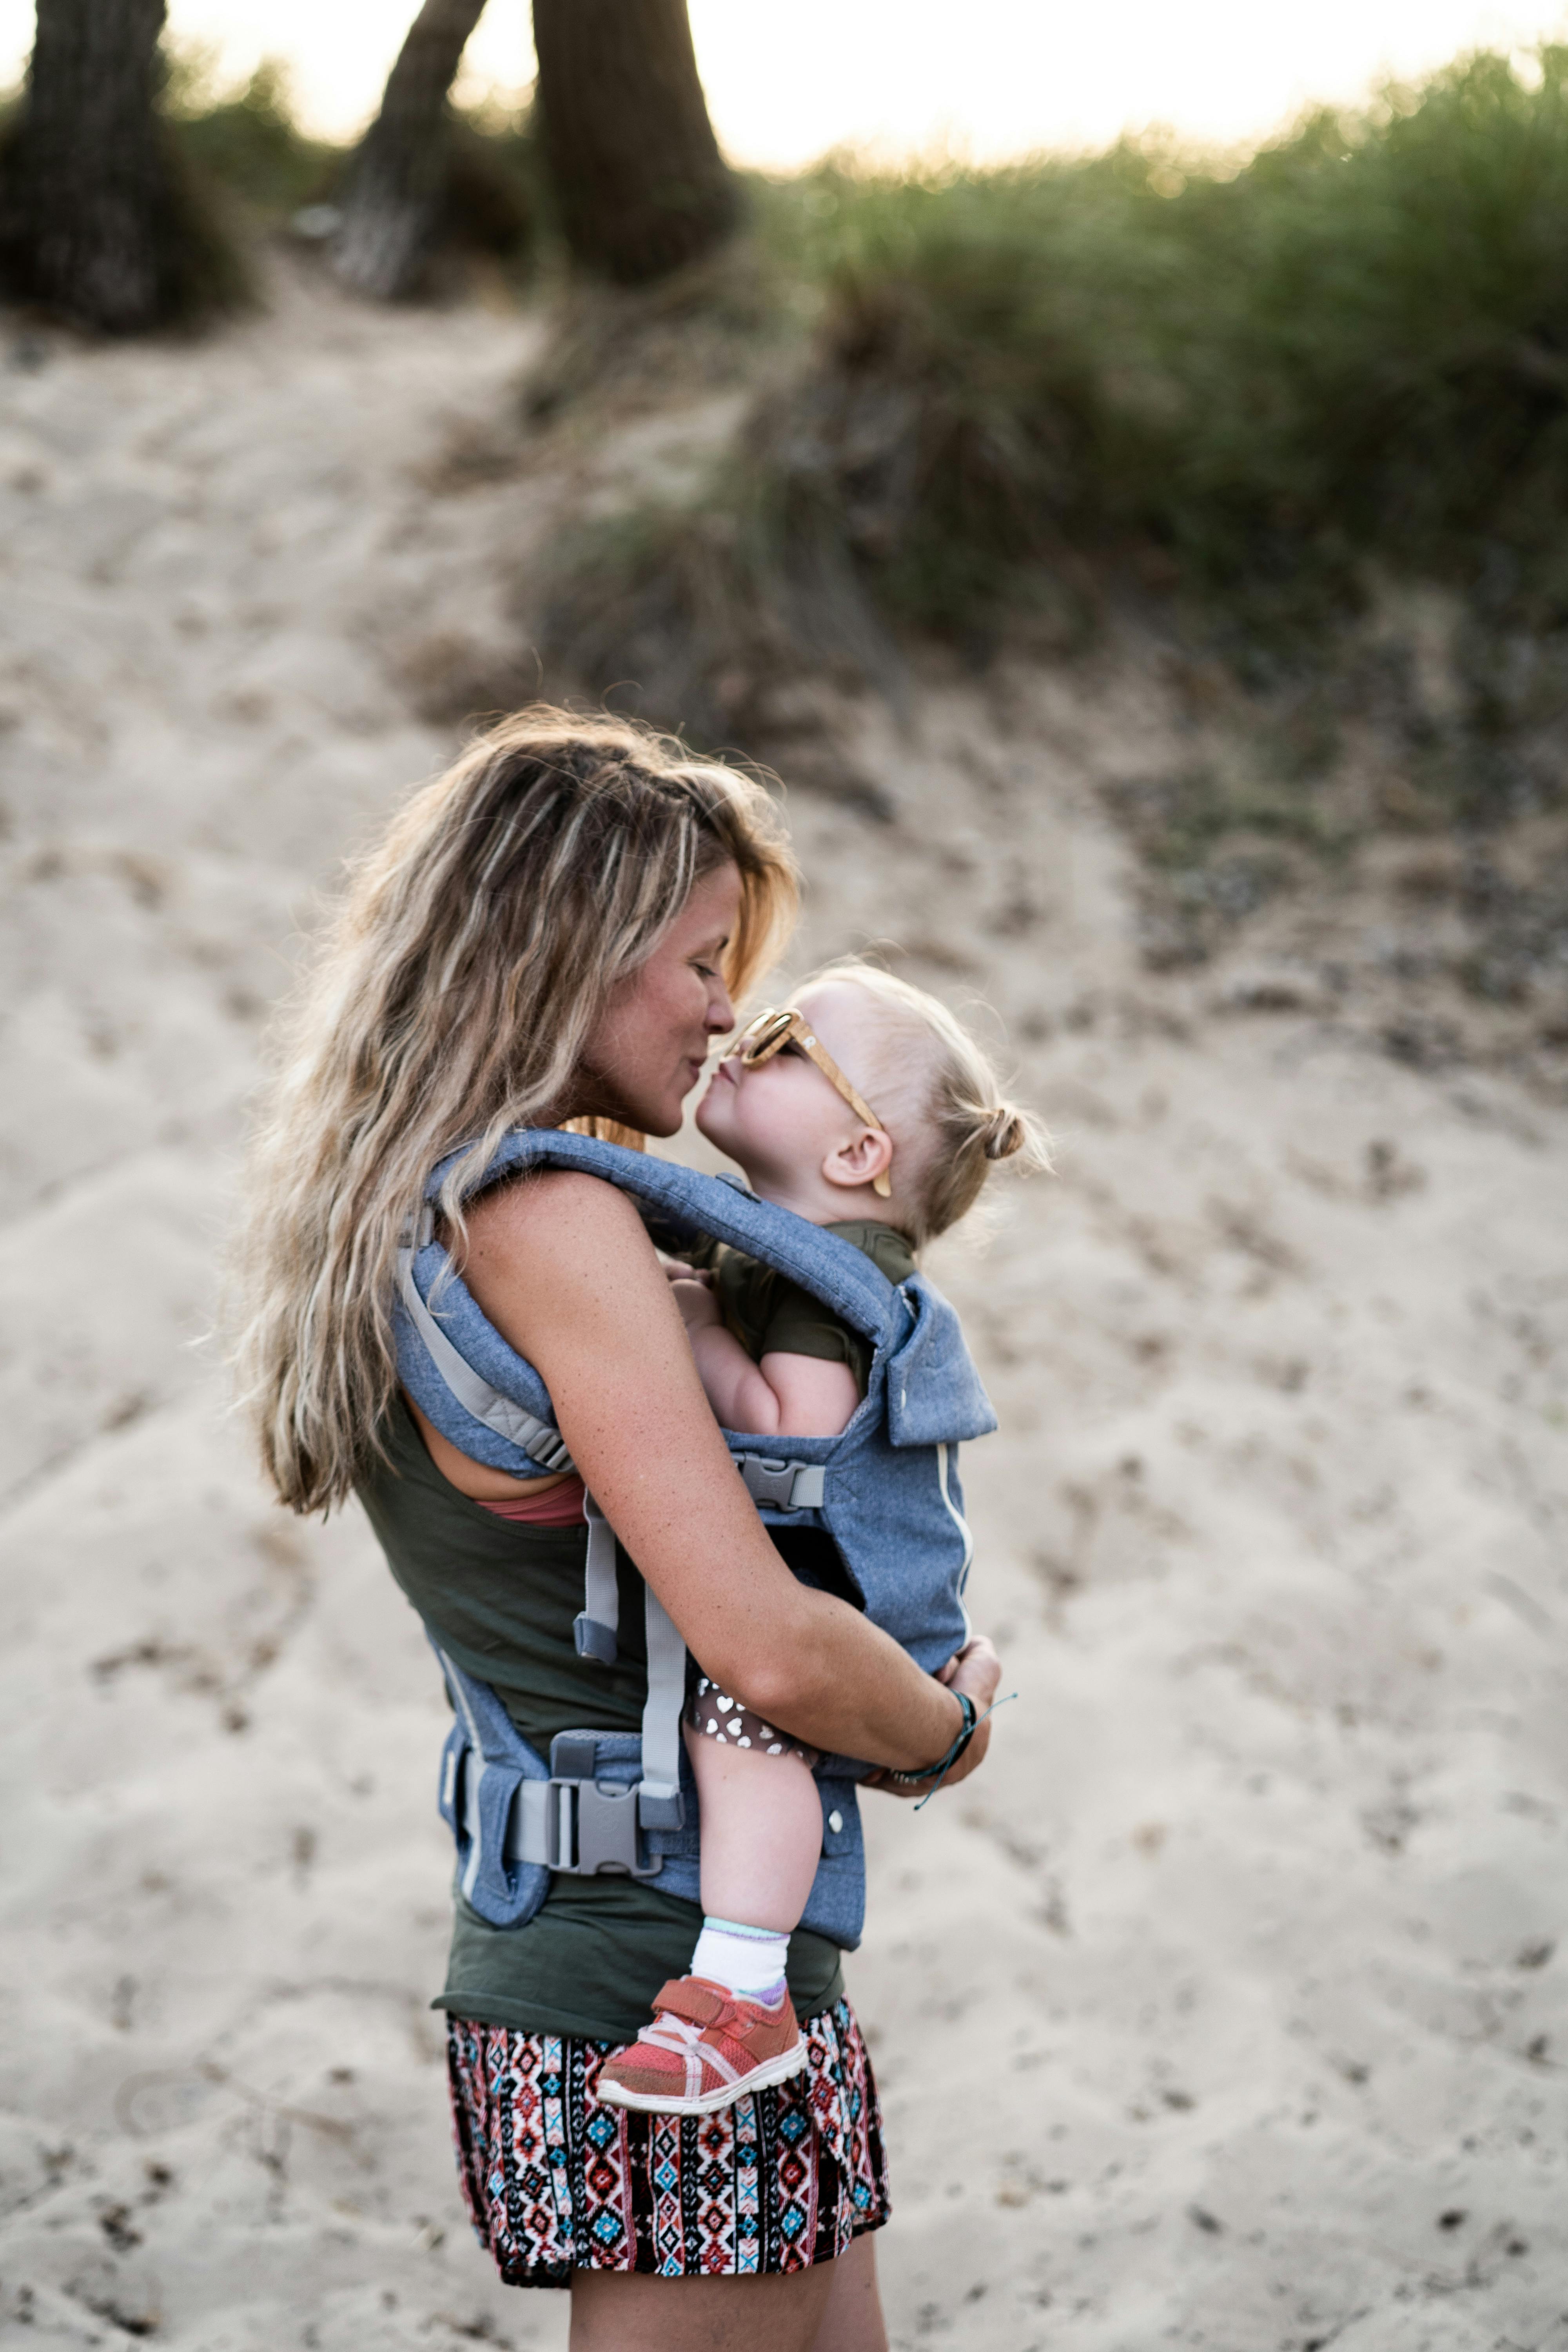 Una mujer a punto de compartir un beso con un niño en la playa | Fuente: Pexels